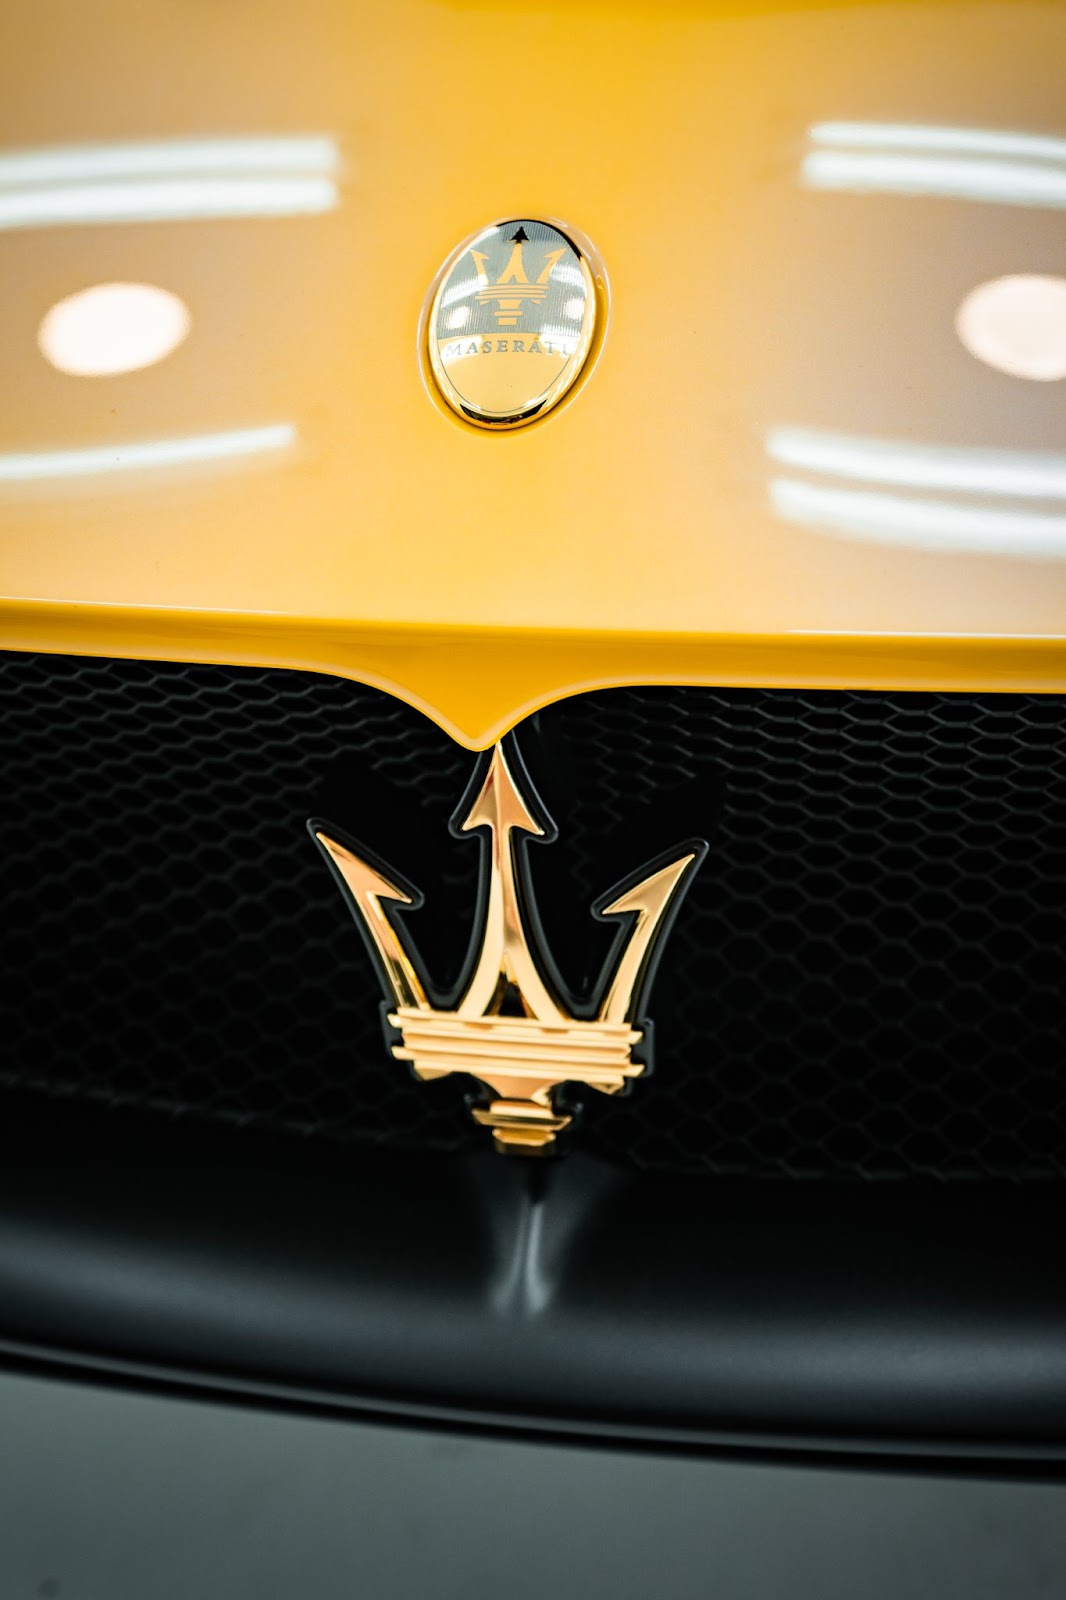 Maserati MC20 đánh dấu một bước tiến mới về công nghệ và hiệu suất vượt trội. Hãy khám phá mẫu siêu xe này qua loạt hình ảnh chất lượng cao, động cơ mạnh mẽ và thiết kế tinh tế, chỉ có tại đây.